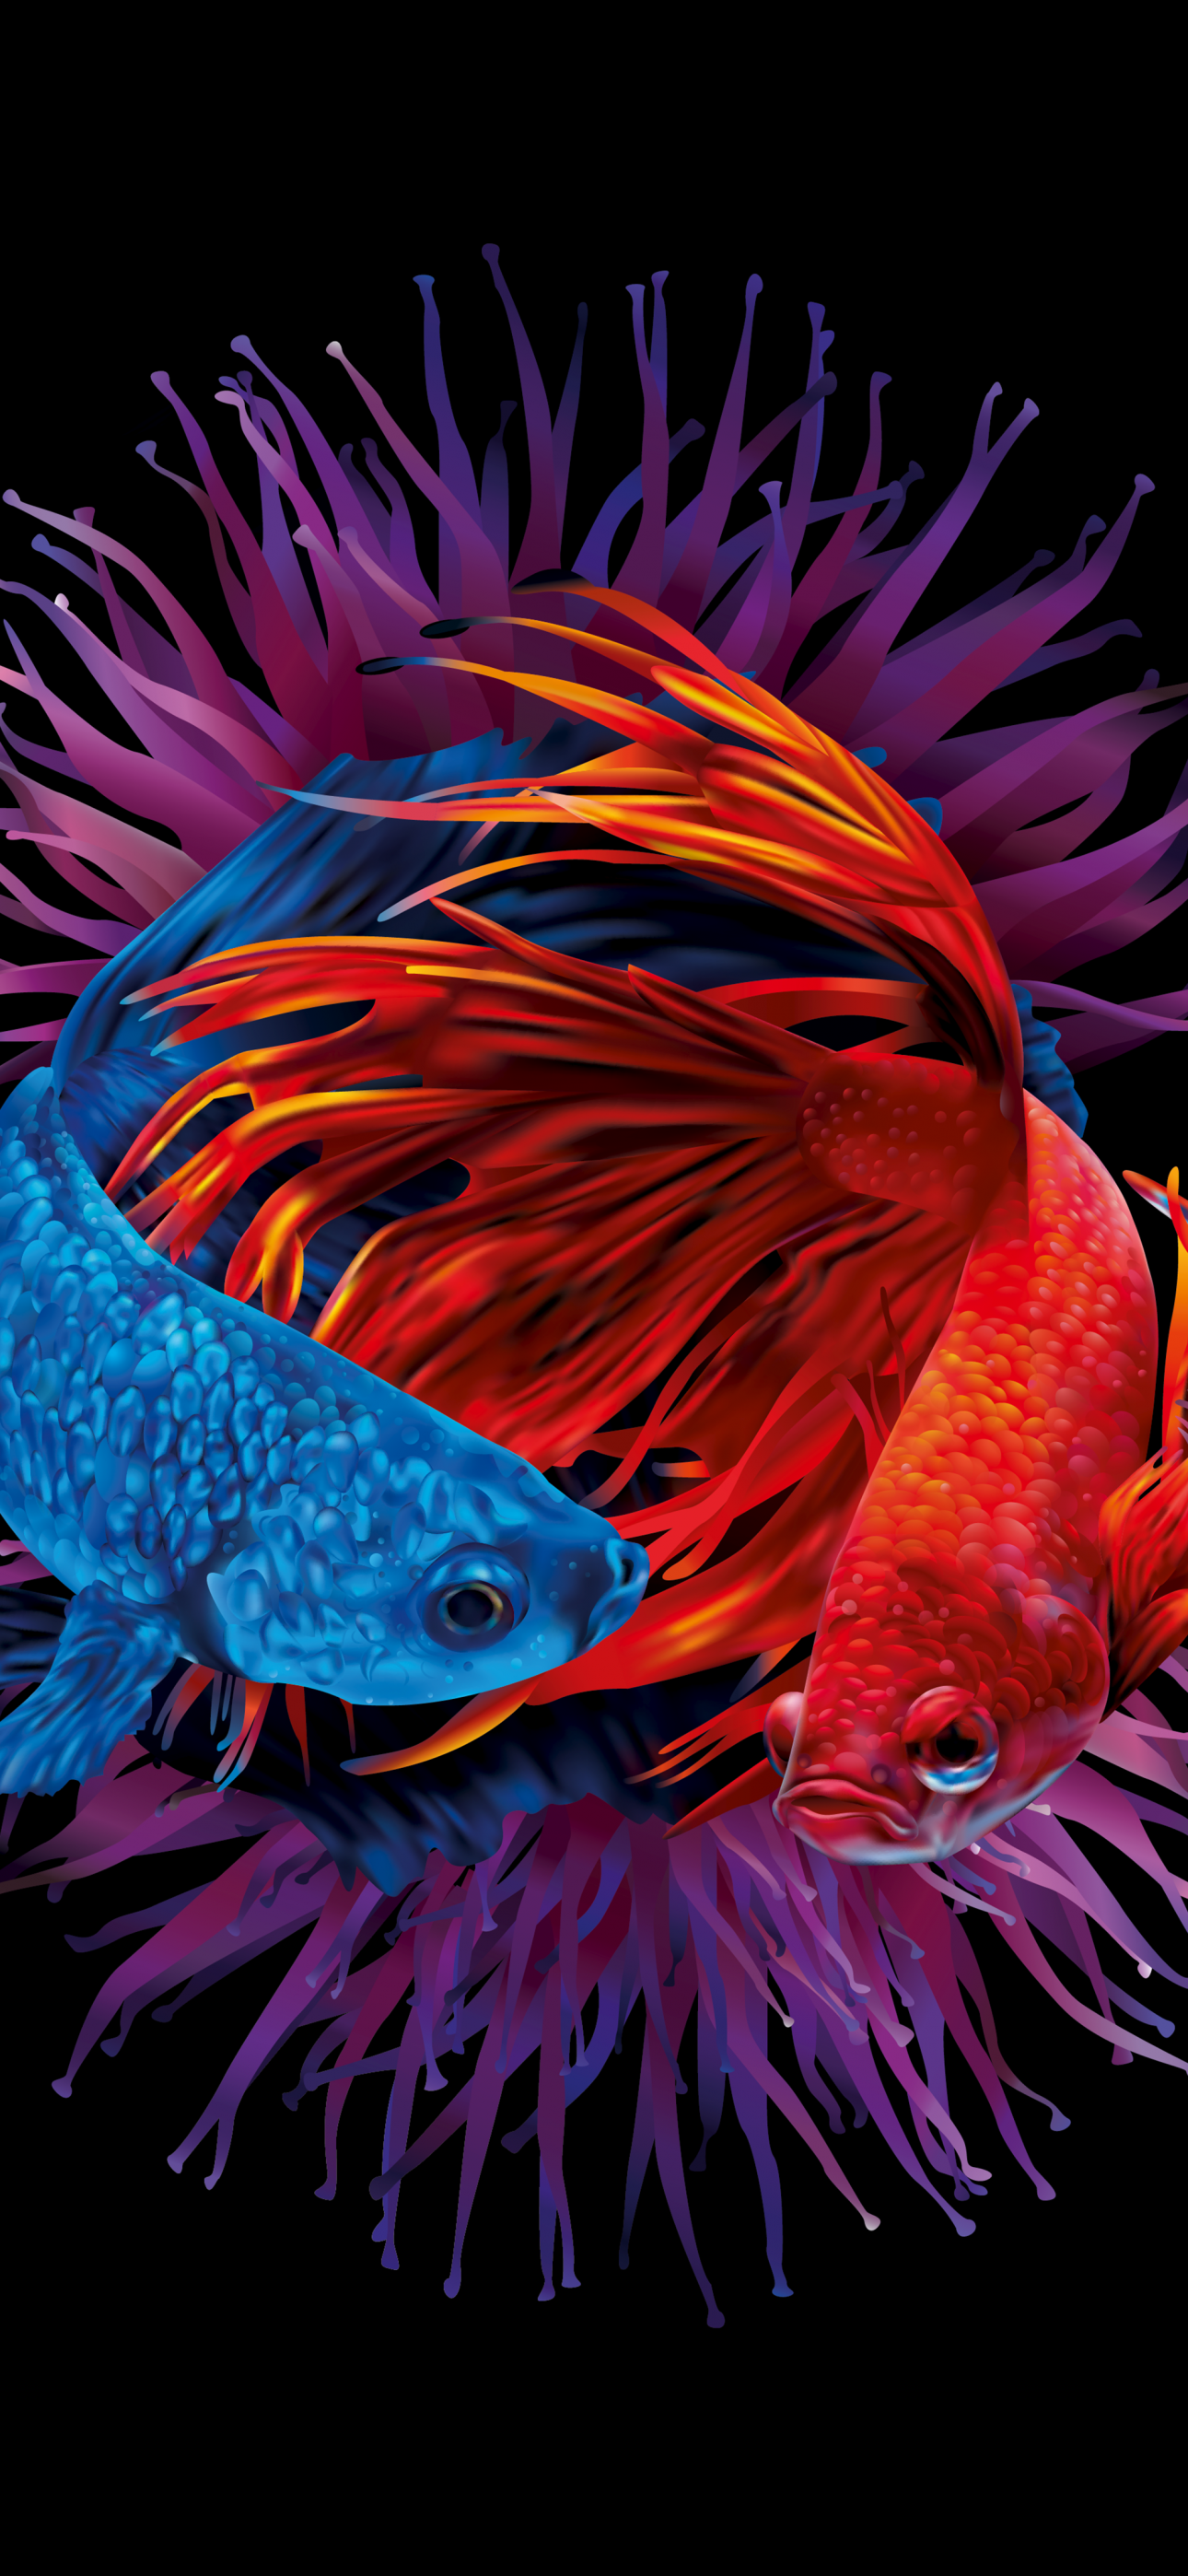 Betta fishes Wallpaper 4K Siamese fighting fish Underwater 10017